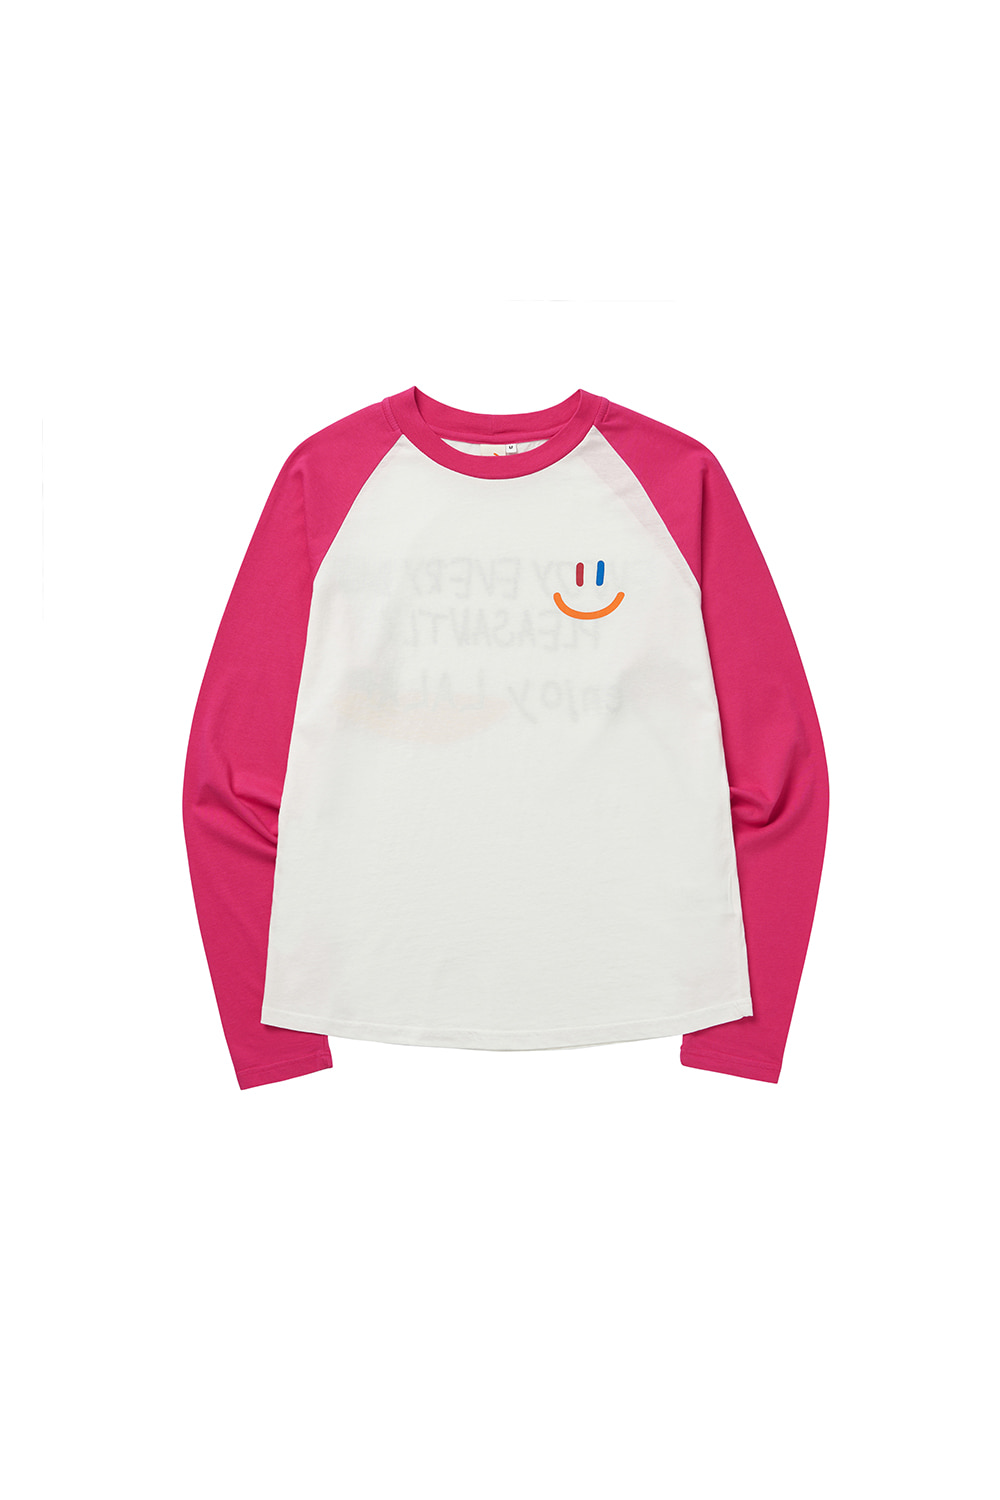 LaLa Kids Raglan T-Shirt [Pink]